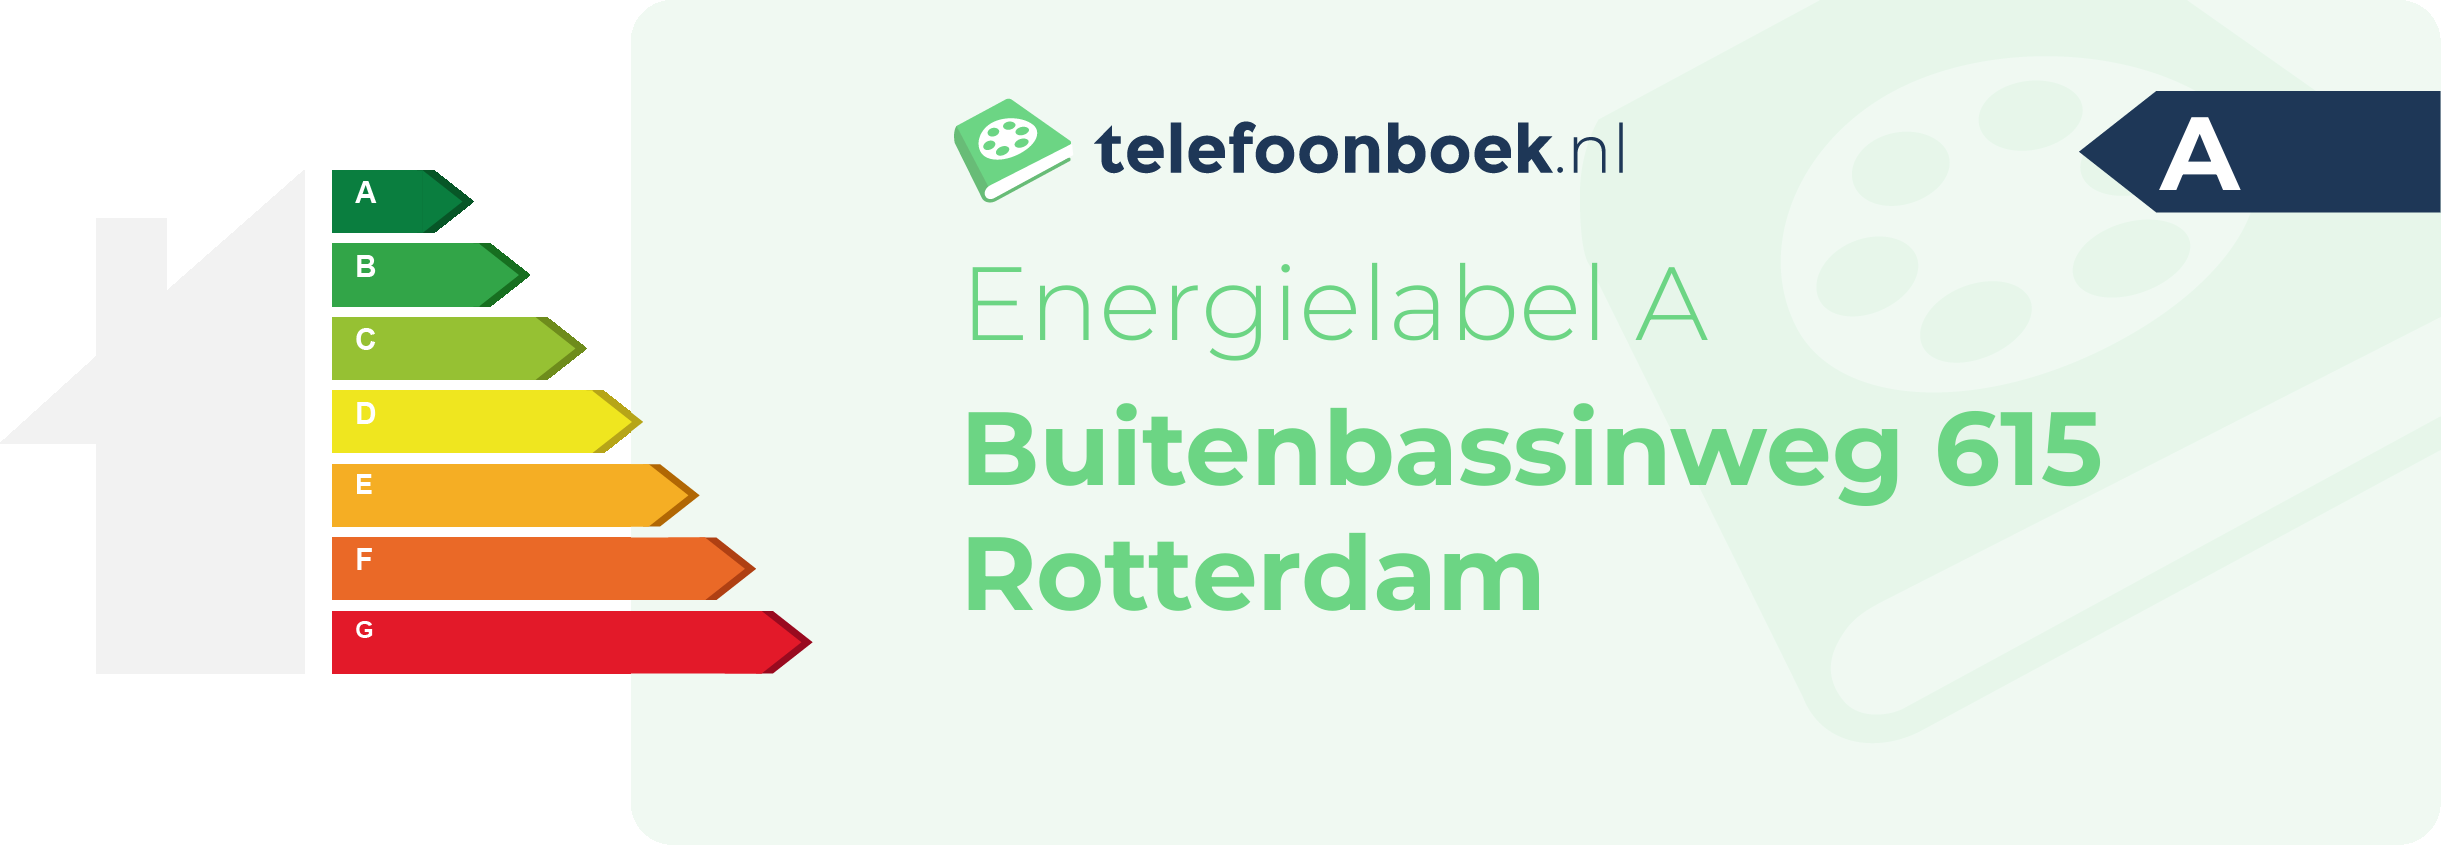 Energielabel Buitenbassinweg 615 Rotterdam